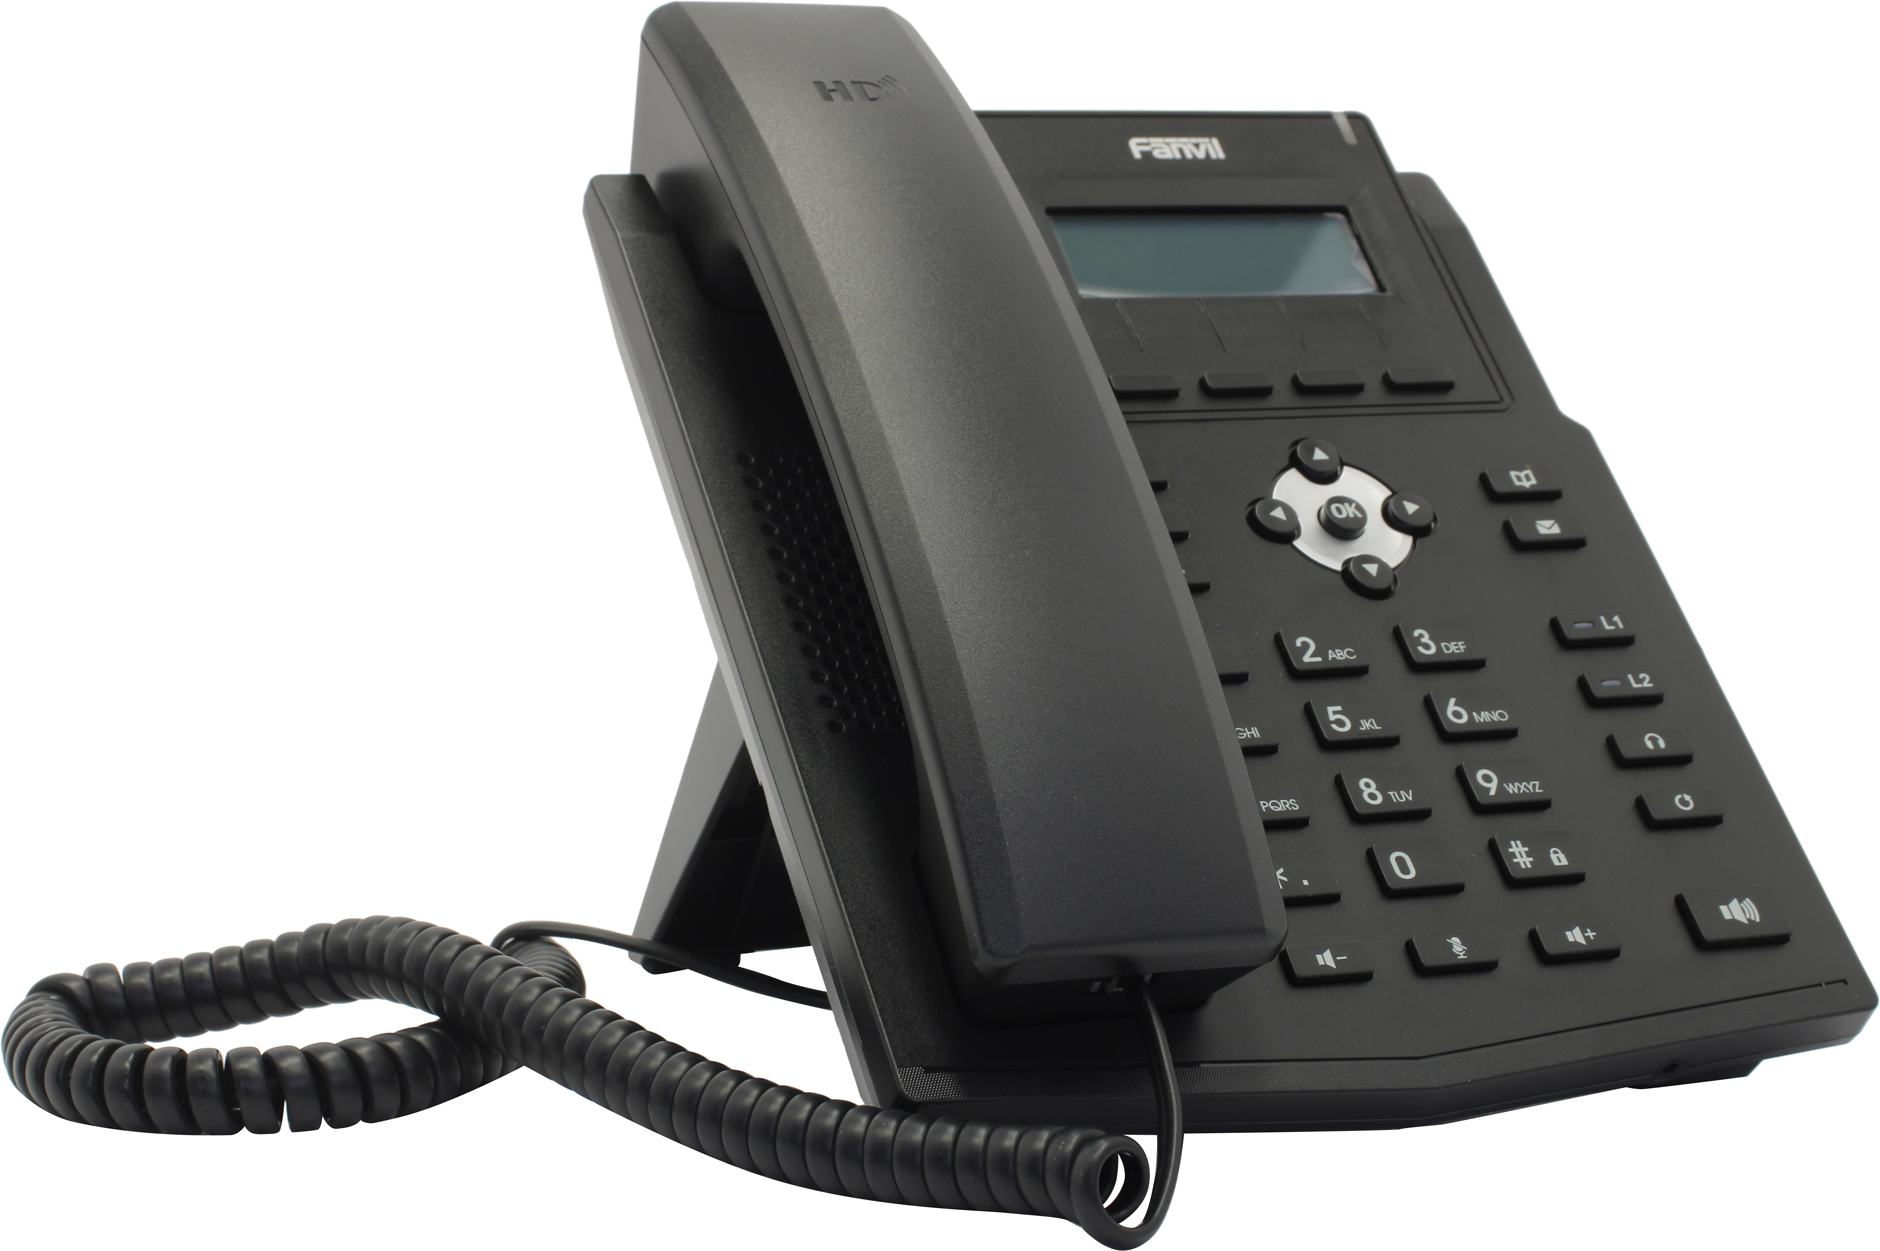 VoIP-телефон Fanvil X1SG, 2 линии, 2 SIP-аккаунта, монохромный дисплей, PoE, черный (X1SG)